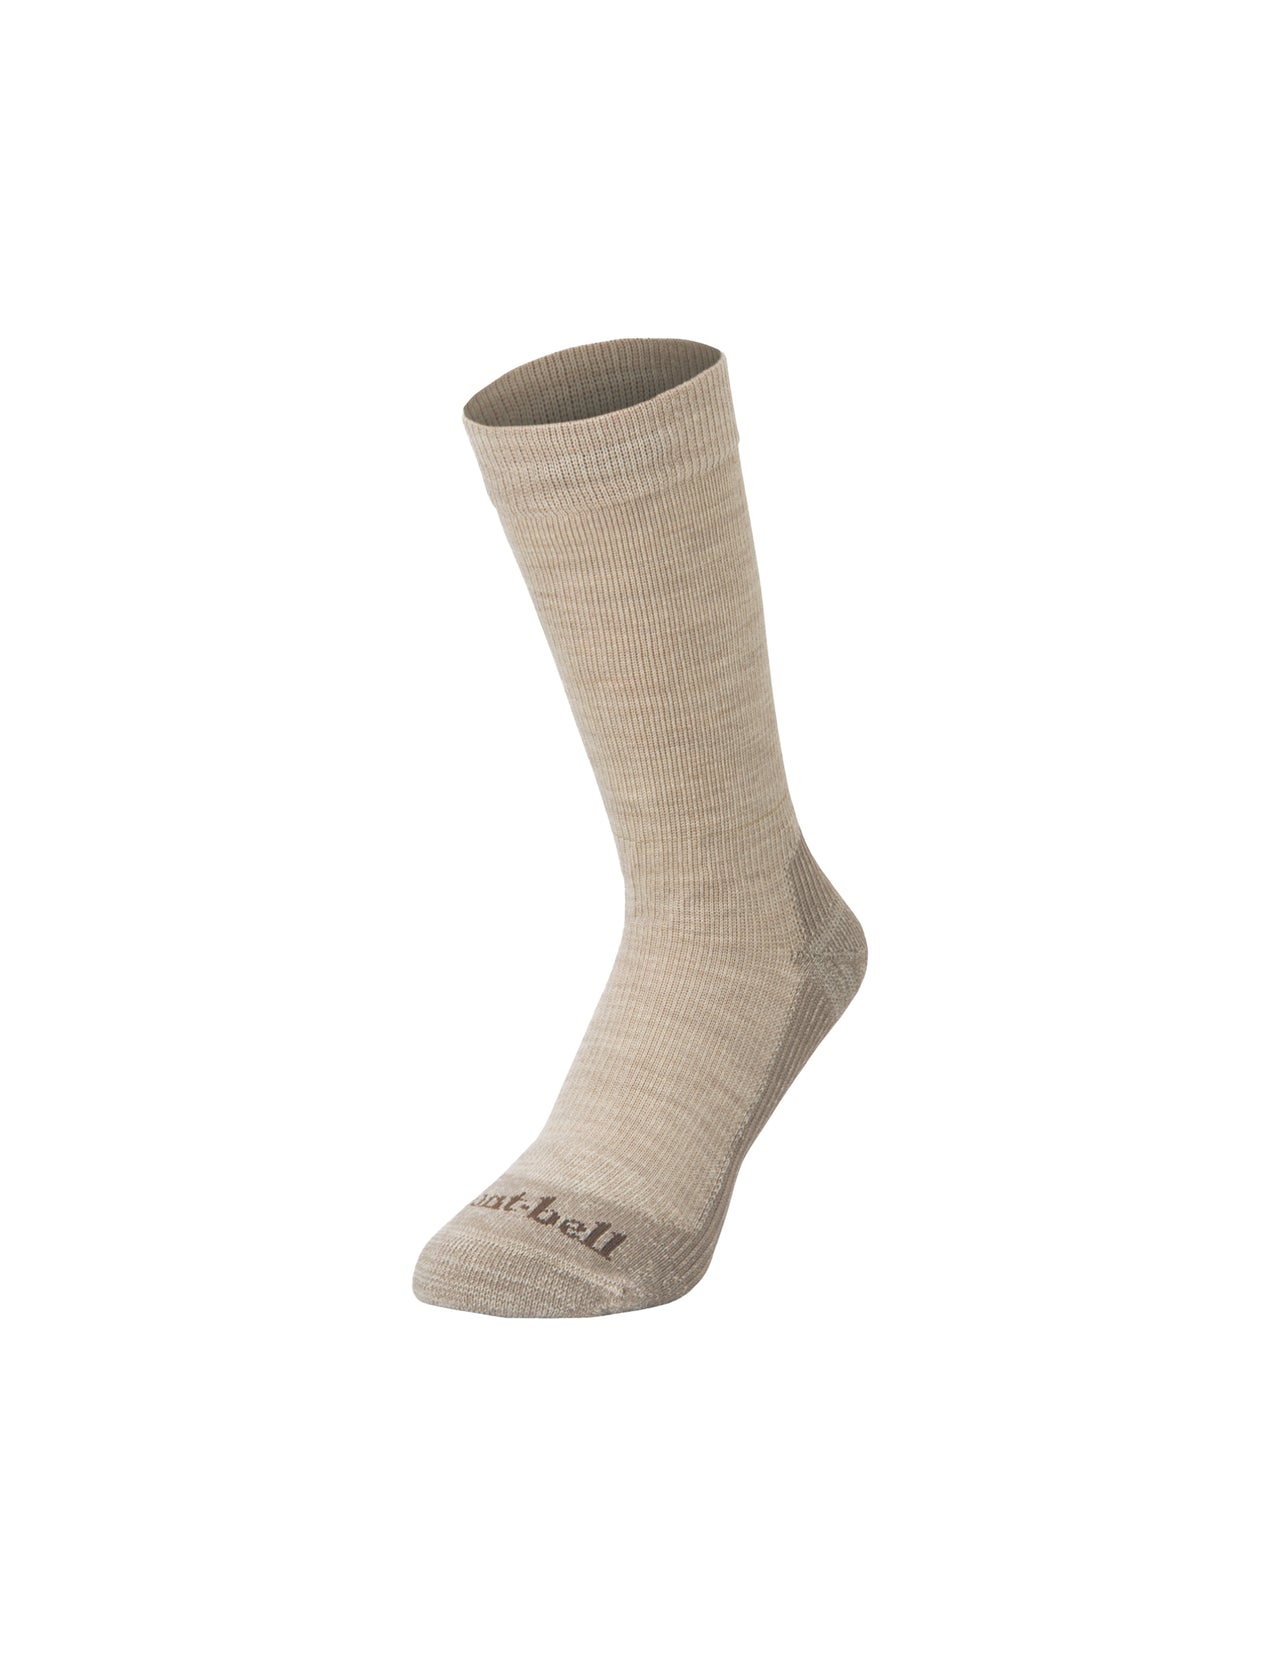 Merino Wool Walking Socks in Oatmeal